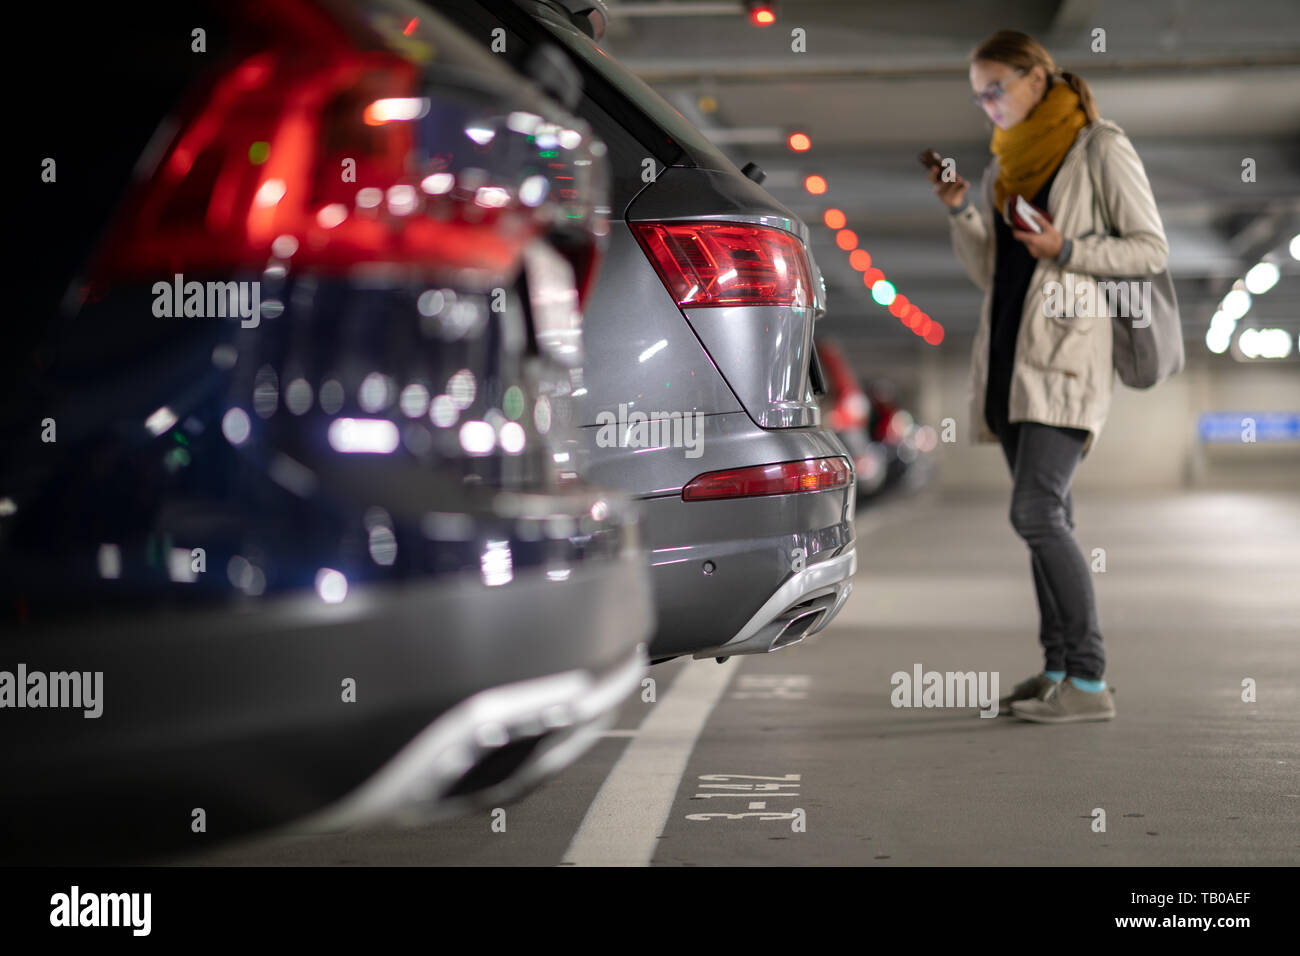 Tiefgarage oder modernen Parkplatz mit vielen Fahrzeugen, die Perspektive der Reihe der Autos mit einem weiblichen Fahrer auf der Suche nach Ihrem Fahrzeug Stockfoto